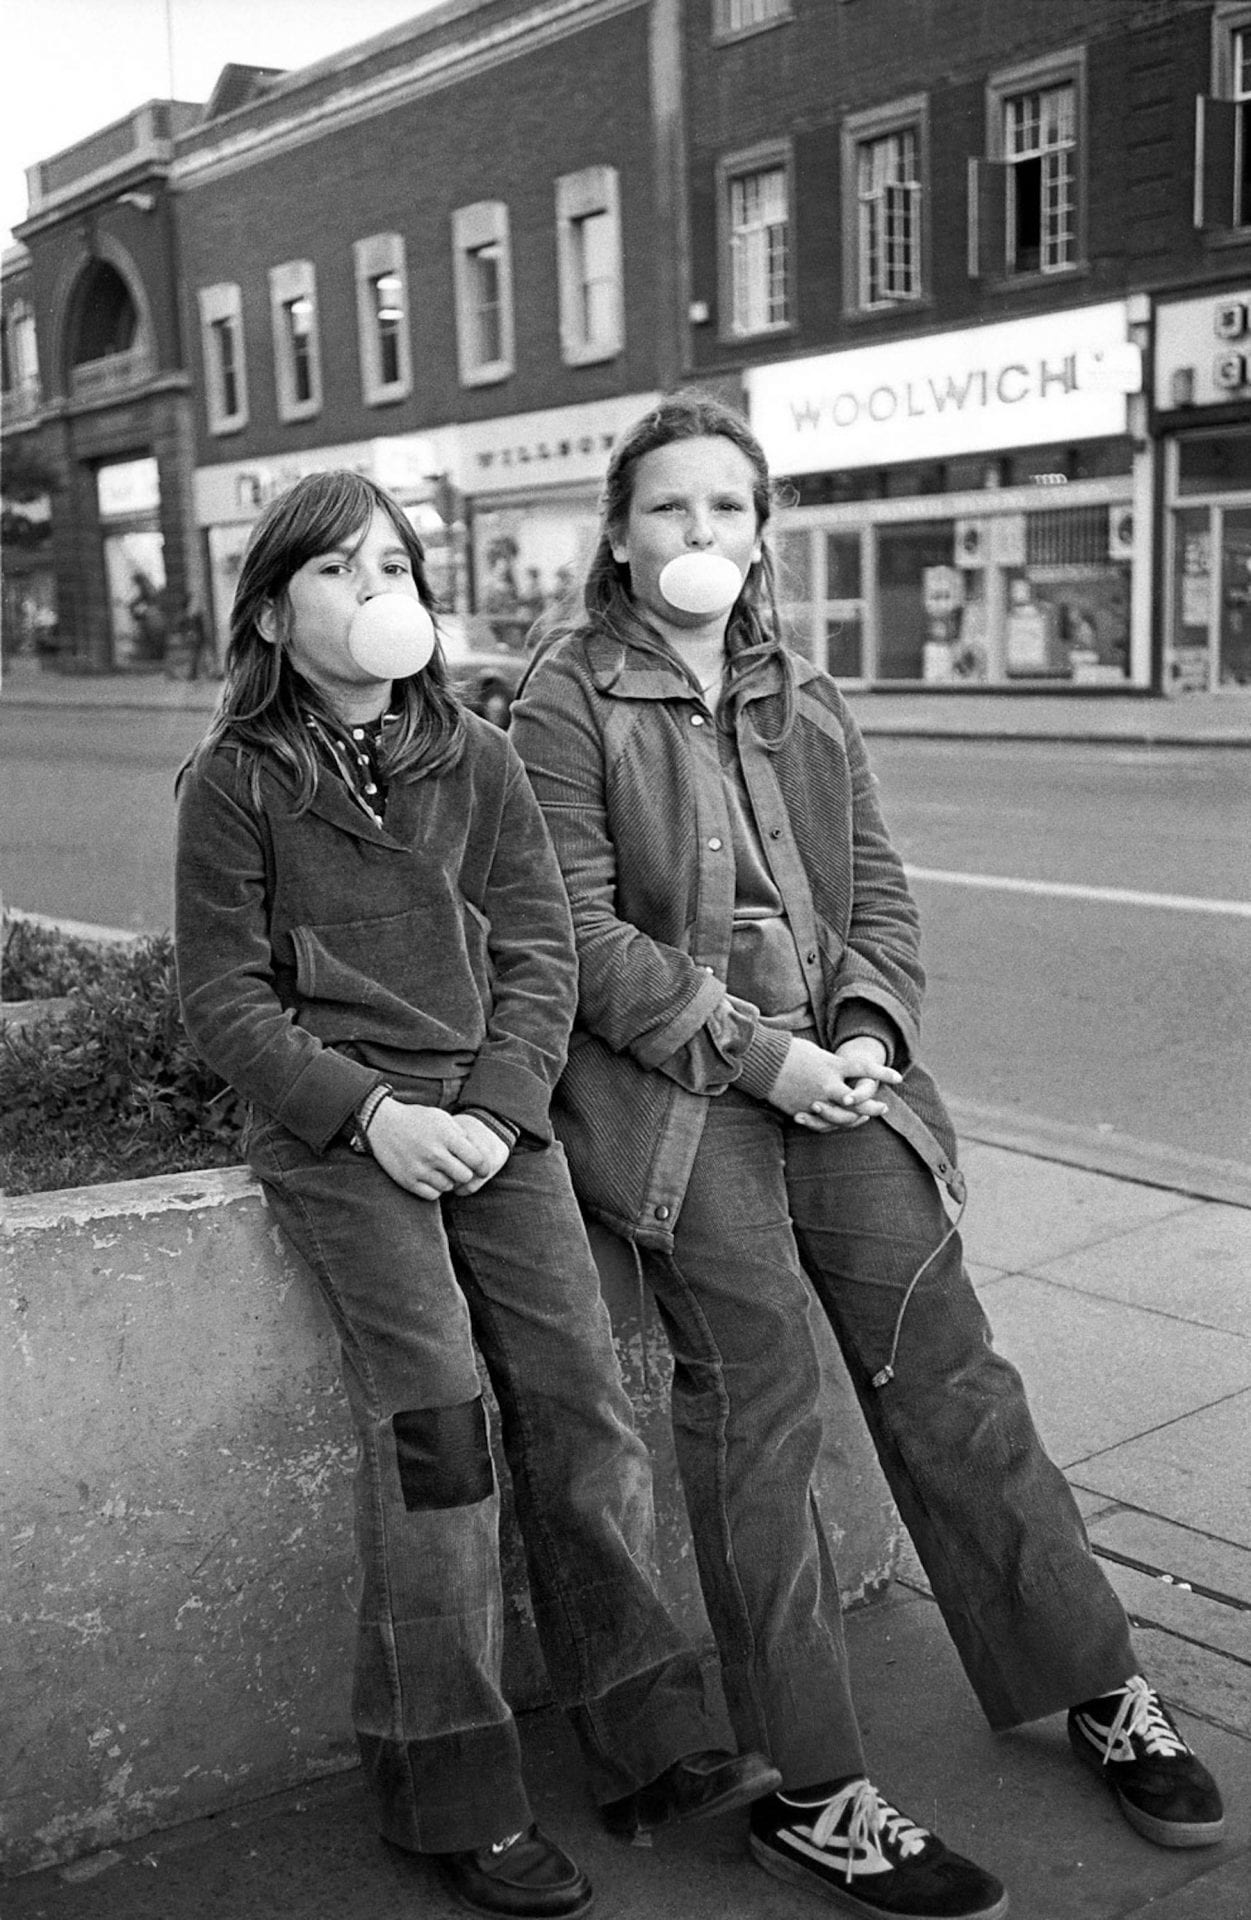 40 ans plus tard, Chris Porsz photographie les mêmes personnes au même endroit